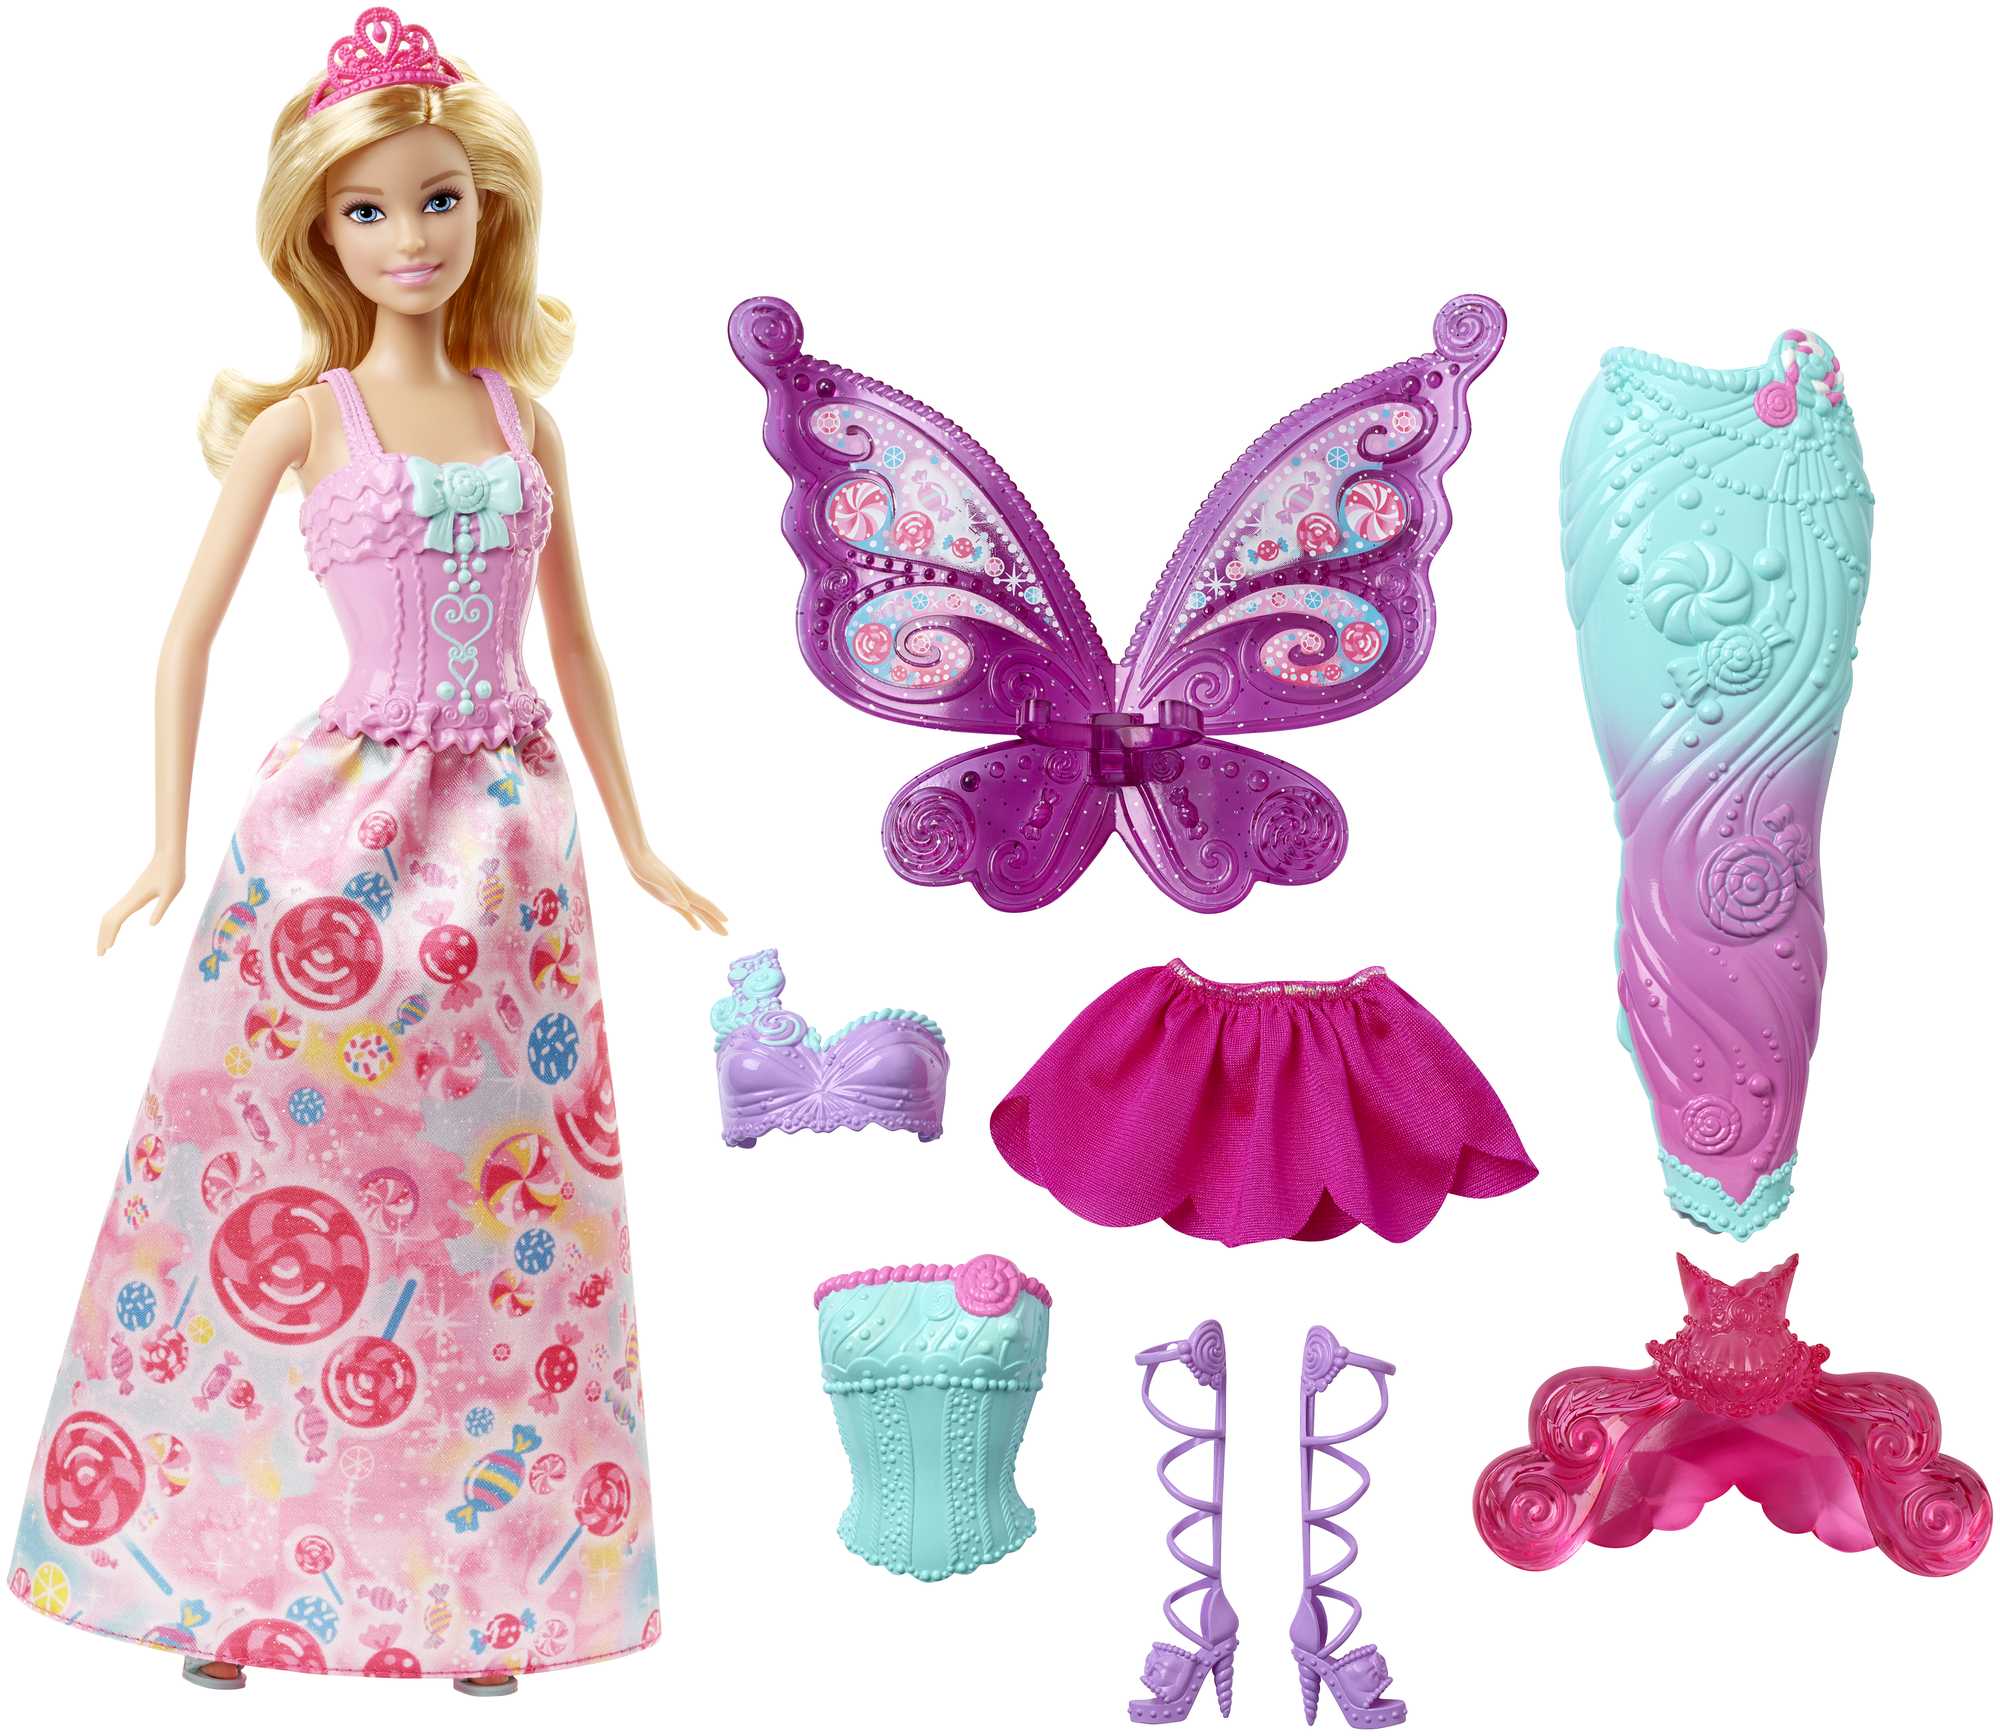 Barbie lalka z 3 fantastycznymi strojami i akcesoriami, w tym syreny ogon i wróżki